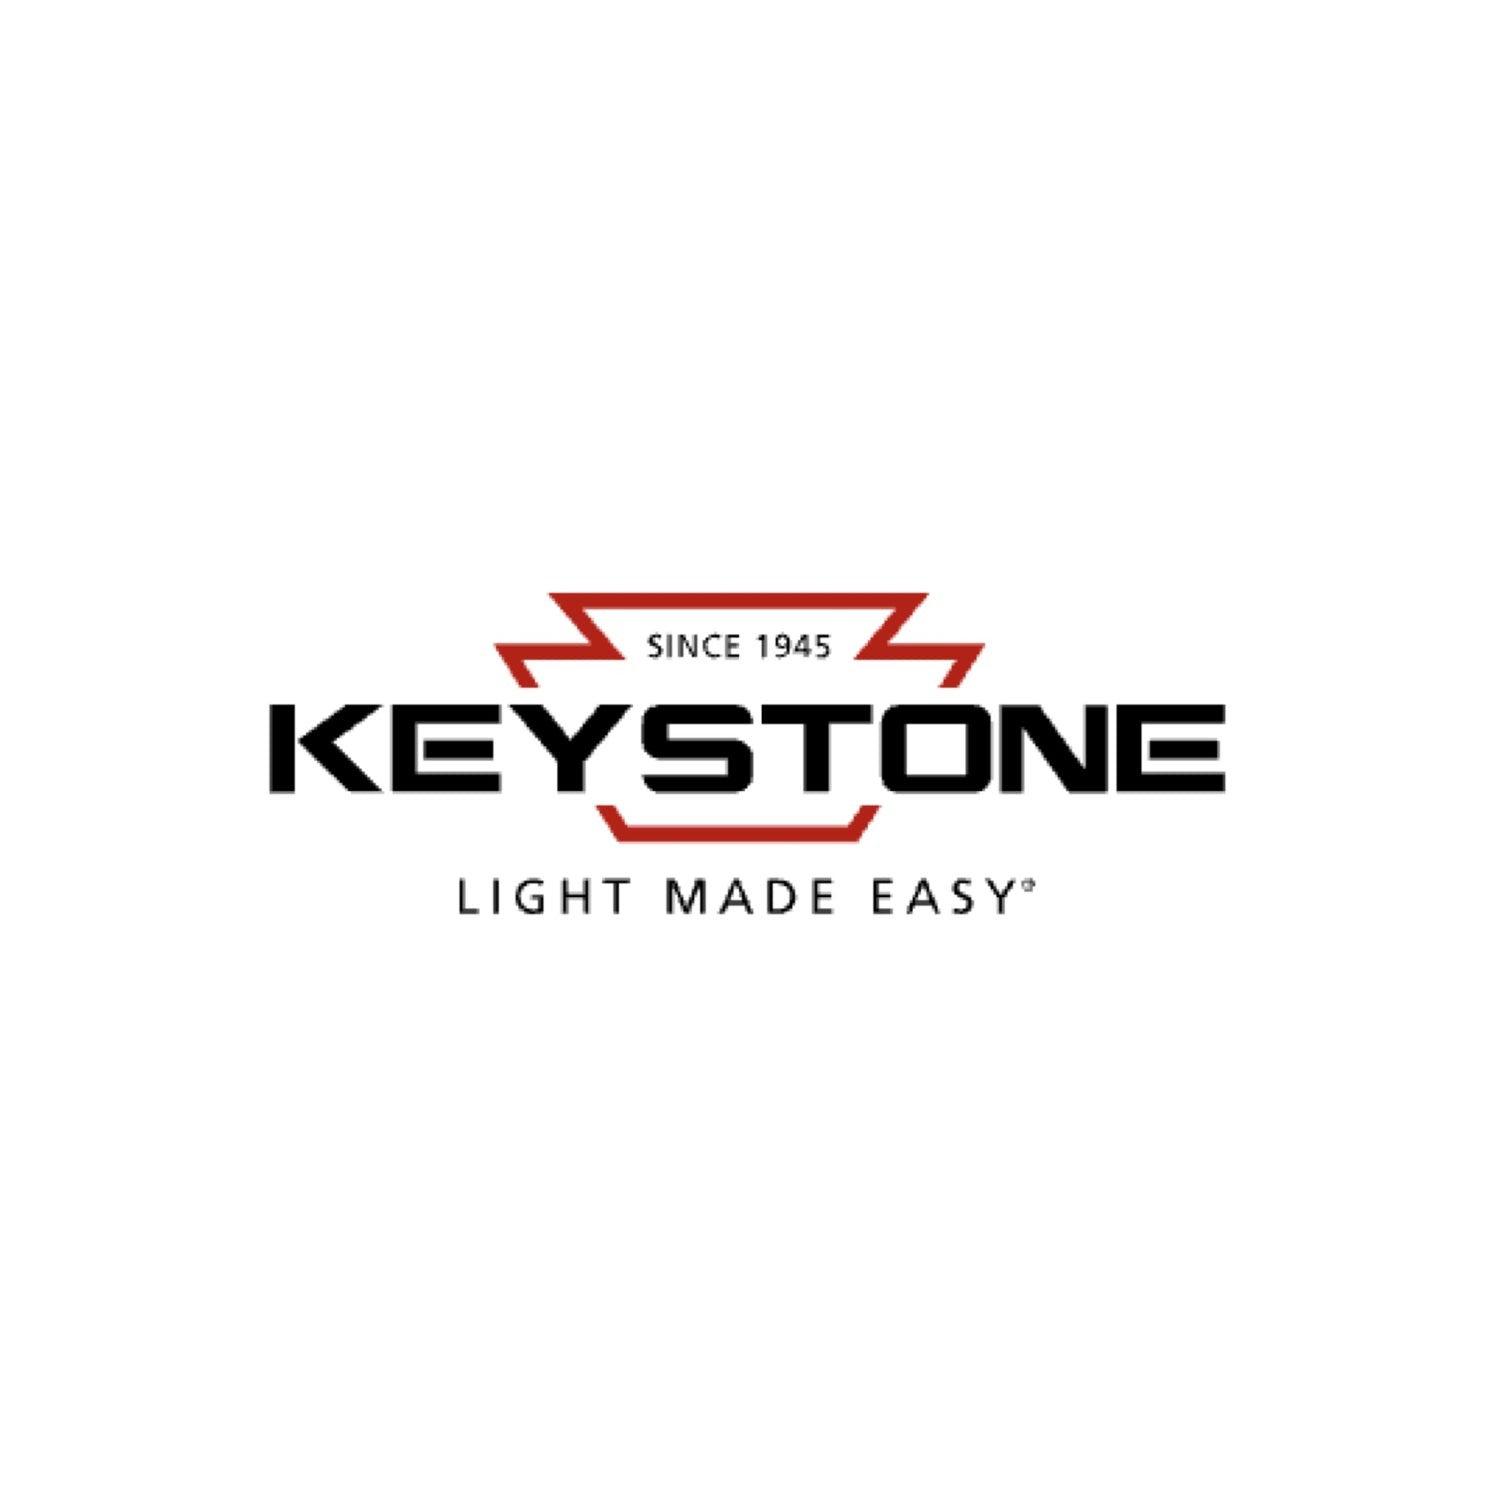 KEYSTONE TECHNOLOGIES LLC